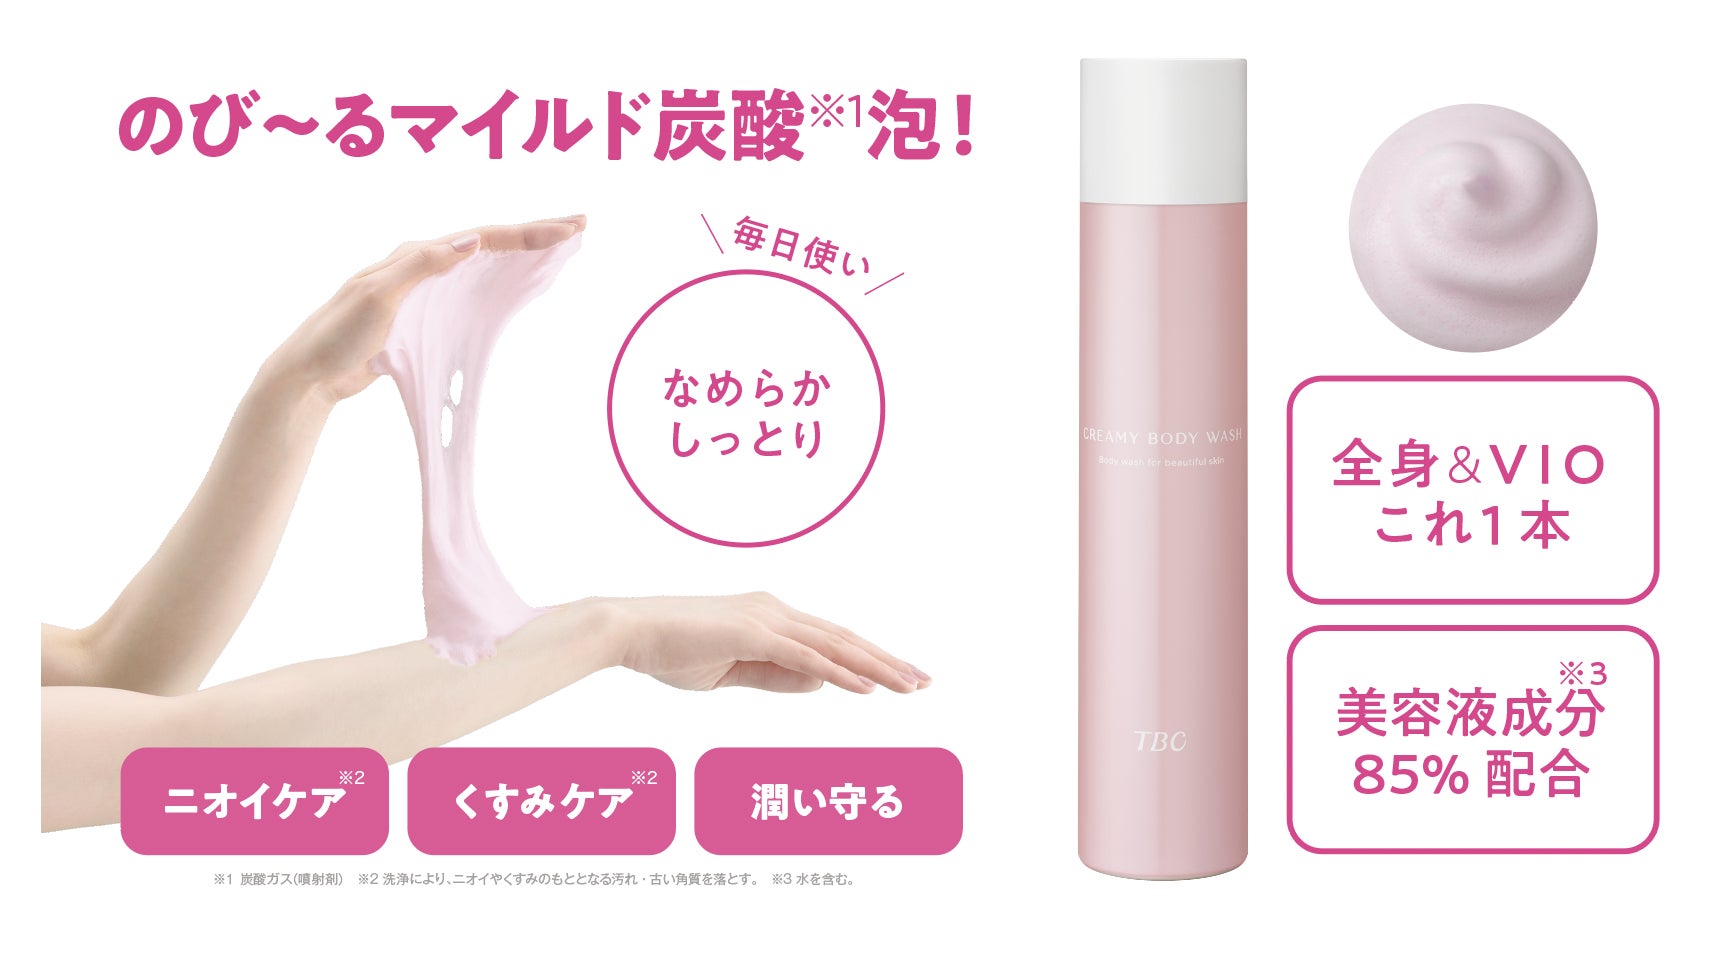 株式会社kyogokuが展開する美容ブランドKYOGOKU PROFESSIONALより、「KYOGOKUプレミアムオキシ0.5%」の発売が決定いたしました。